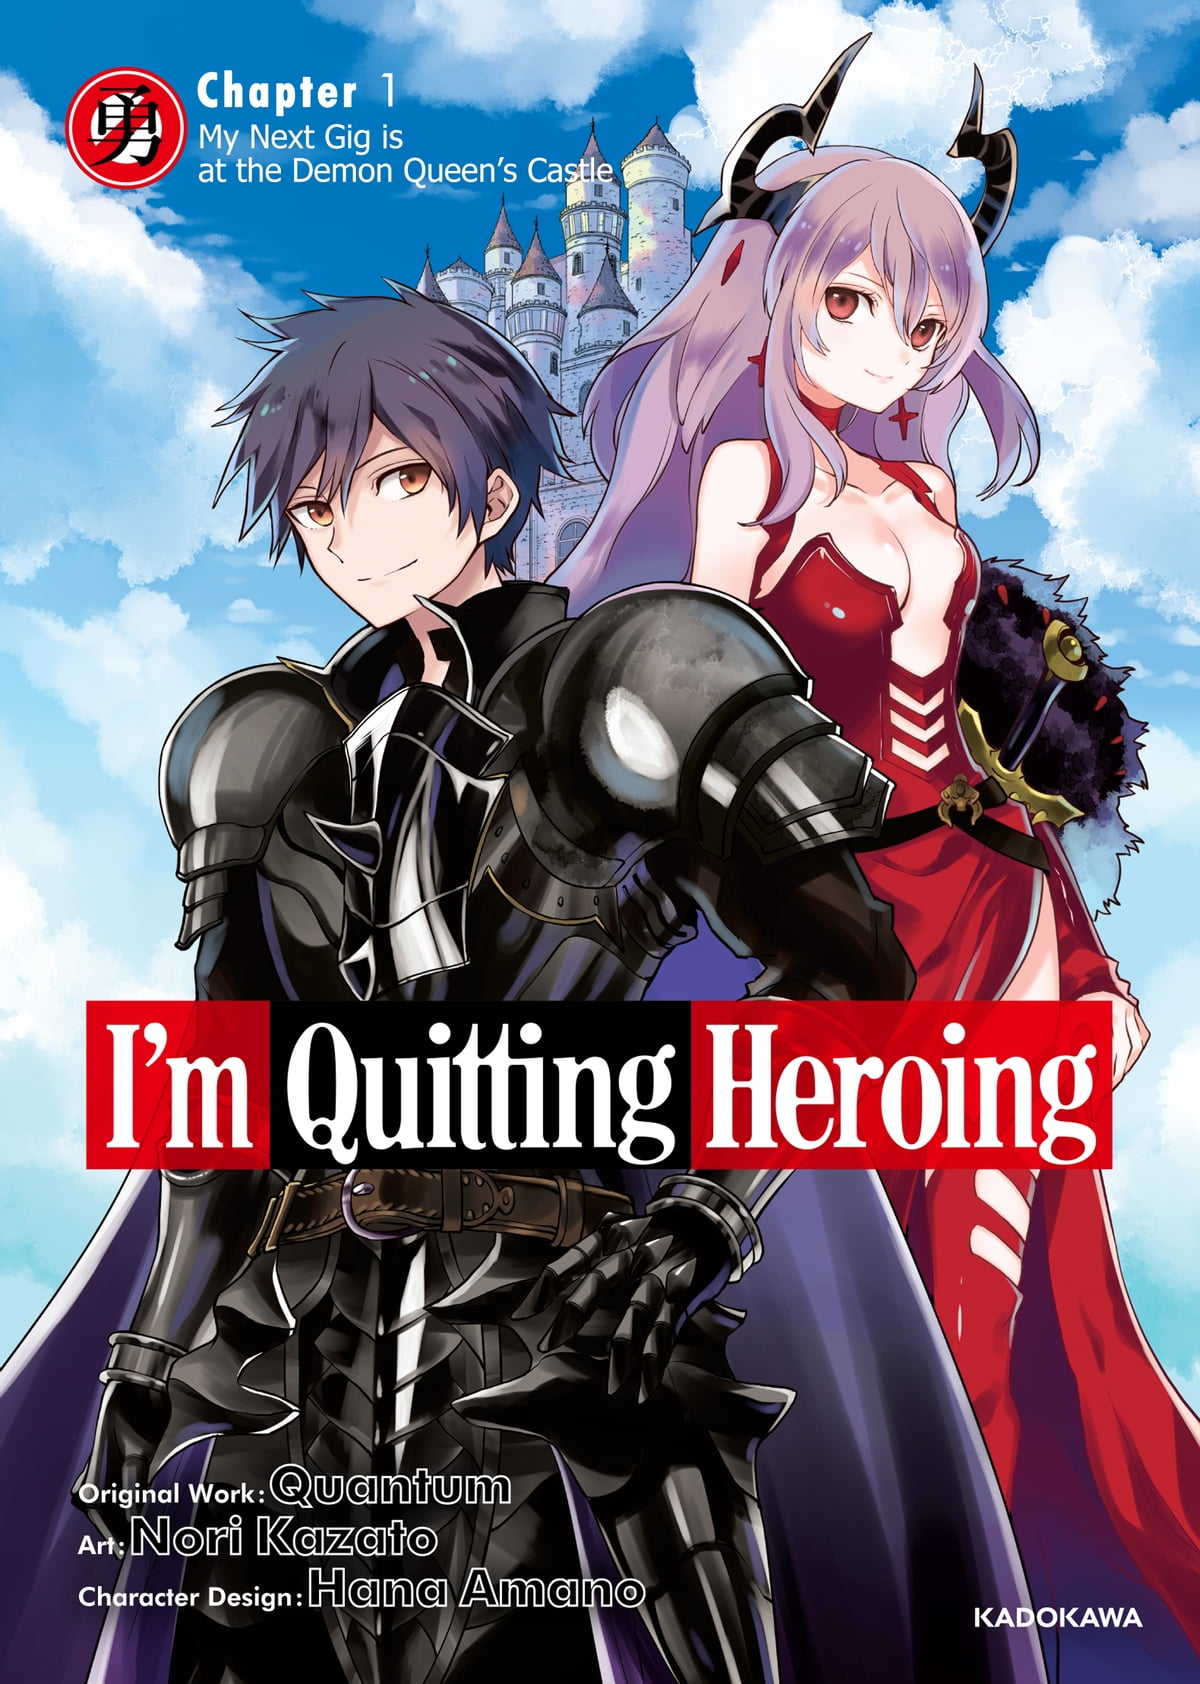 Sto smettendo con Heroing Manga